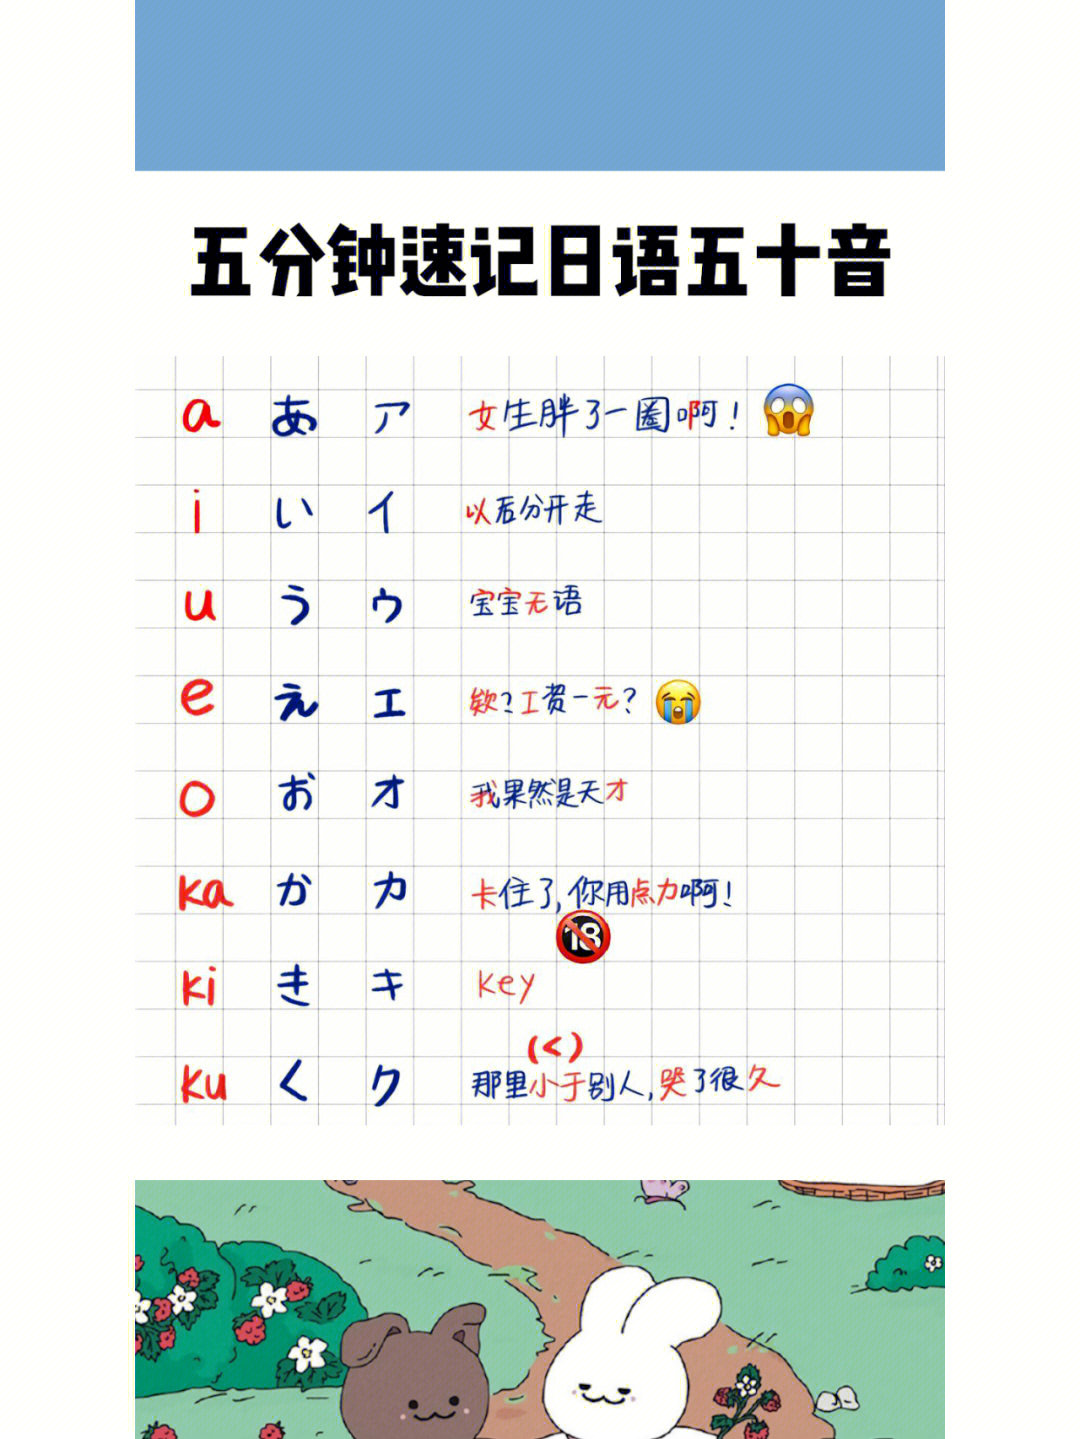 中国人想学日语五十音看这个就够了